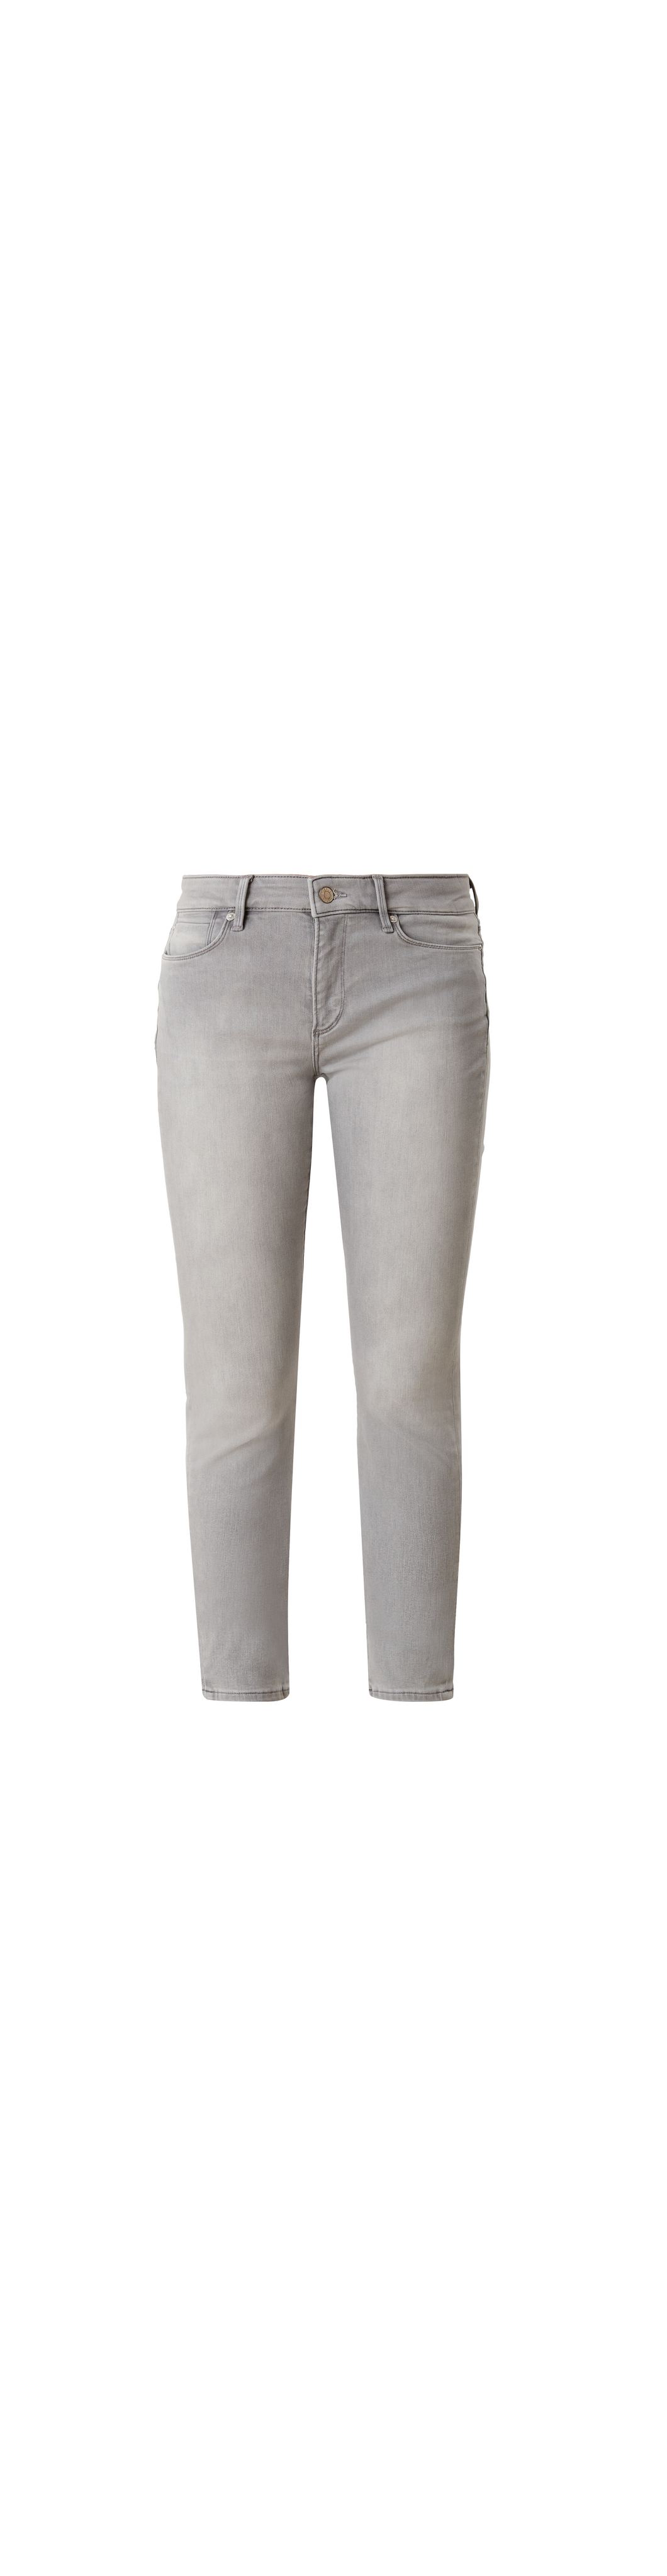 Damen Bekleidung Jeans Röhrenjeans S.oliver Denim Jeans in Grau 